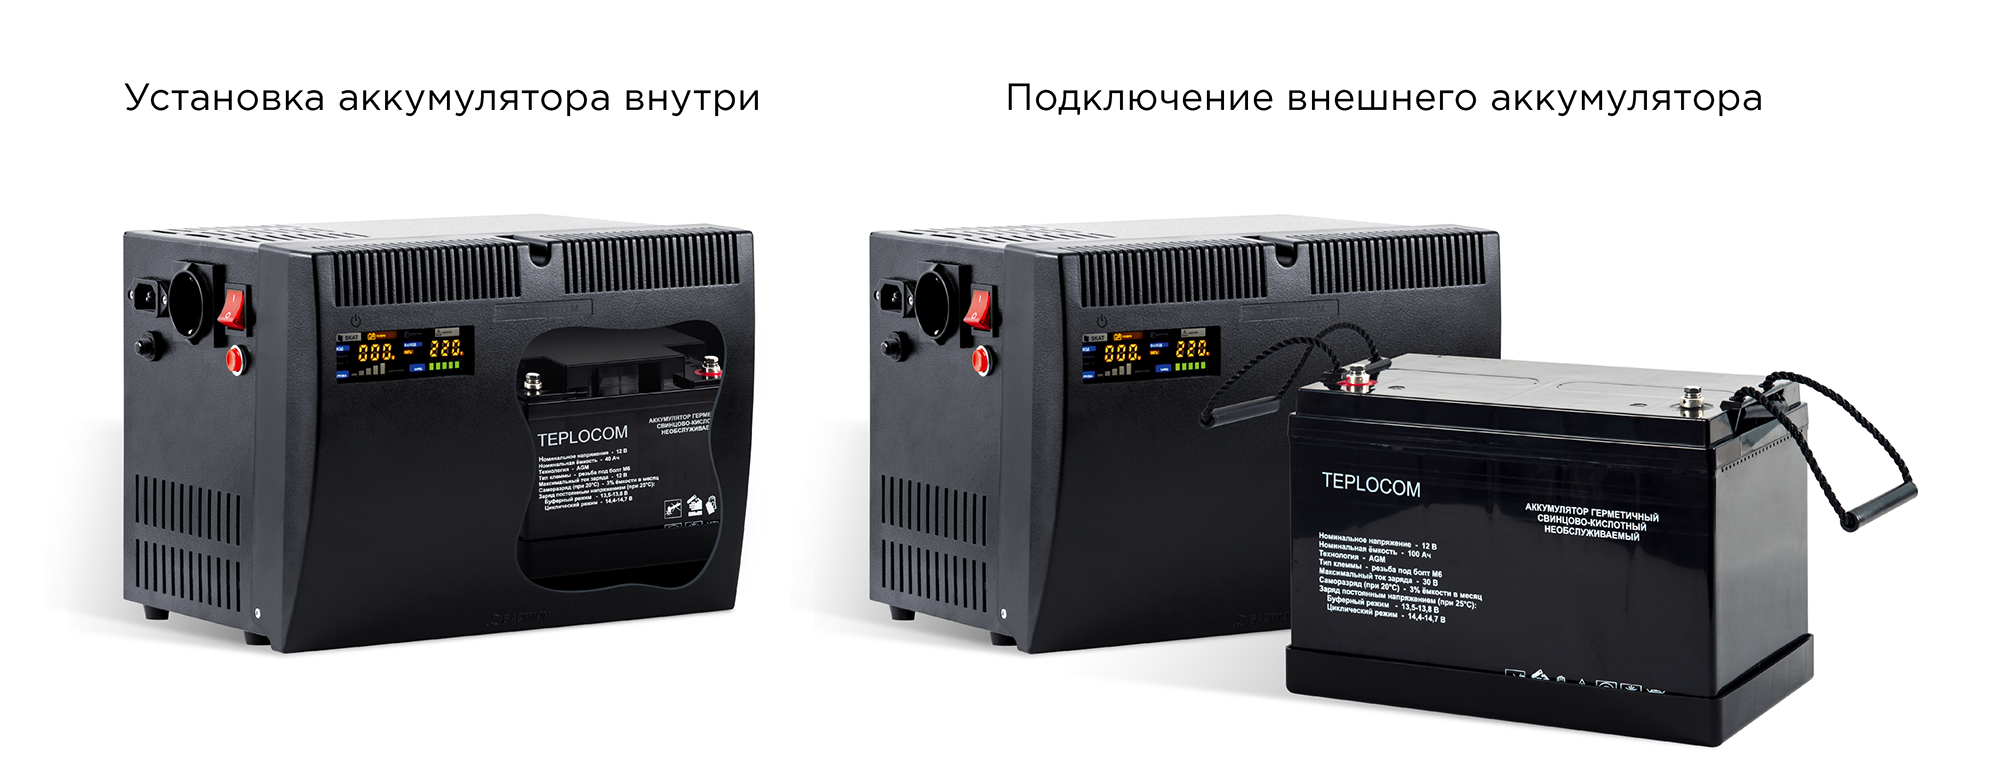 ИБП для систем отопления со встроенным стабилизатором (Line-Interactive) TEPLOCOM-500+. Изображение  11